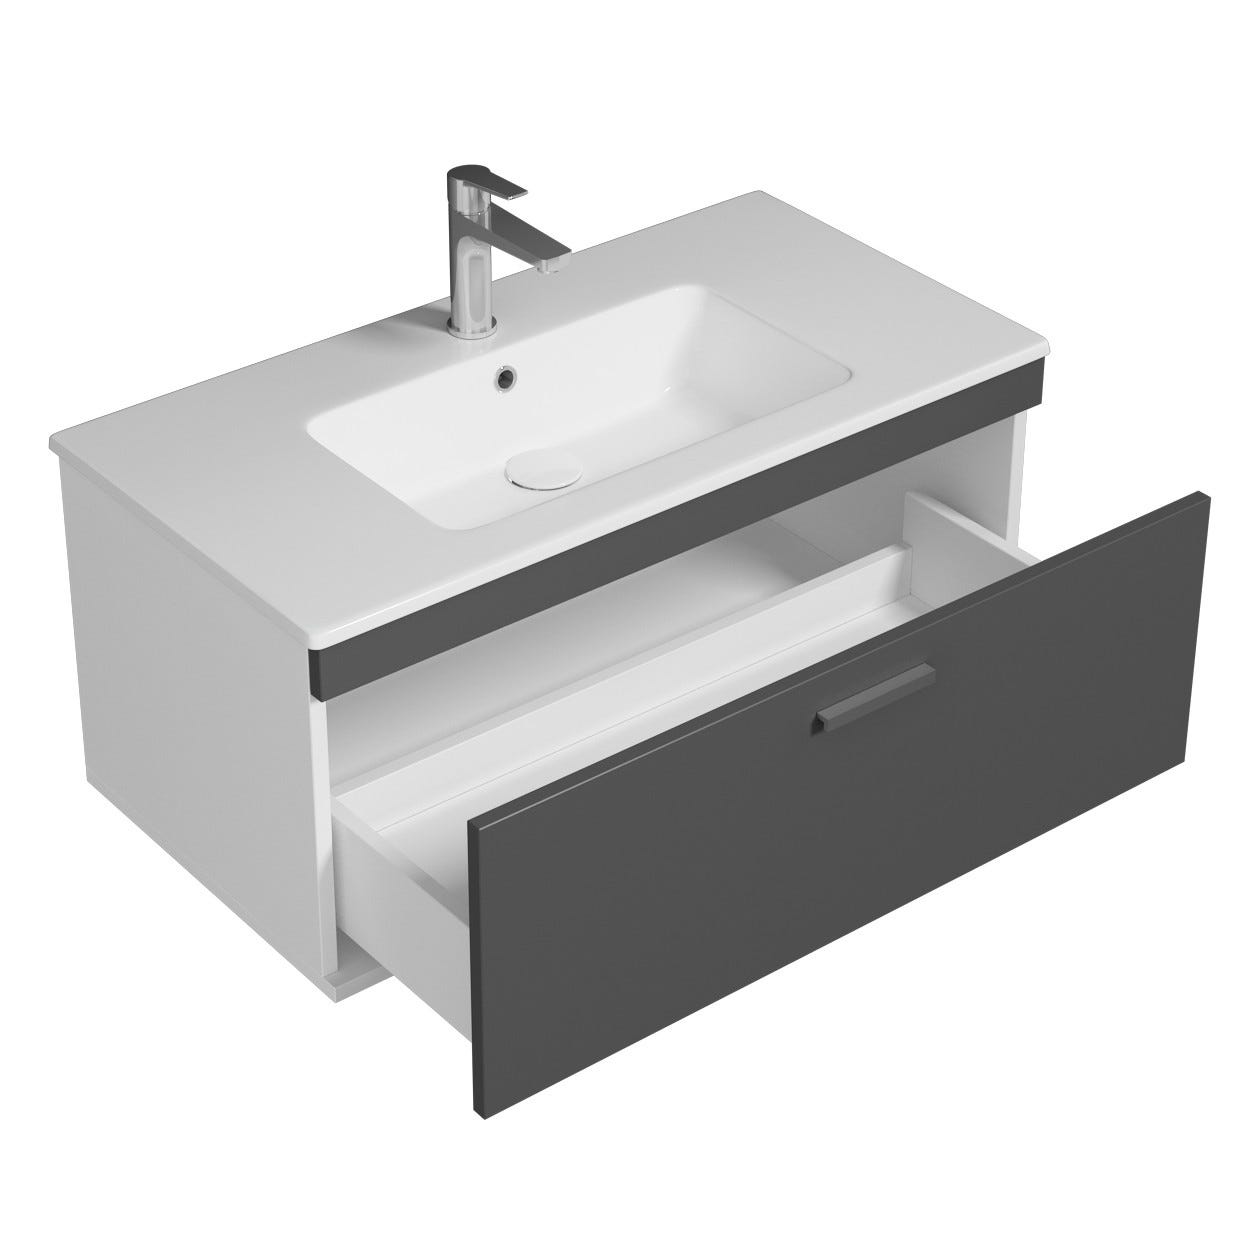 RUBITE Meuble salle de bain simple vasque 1 tiroir gris anthracite largeur 90 cm 1